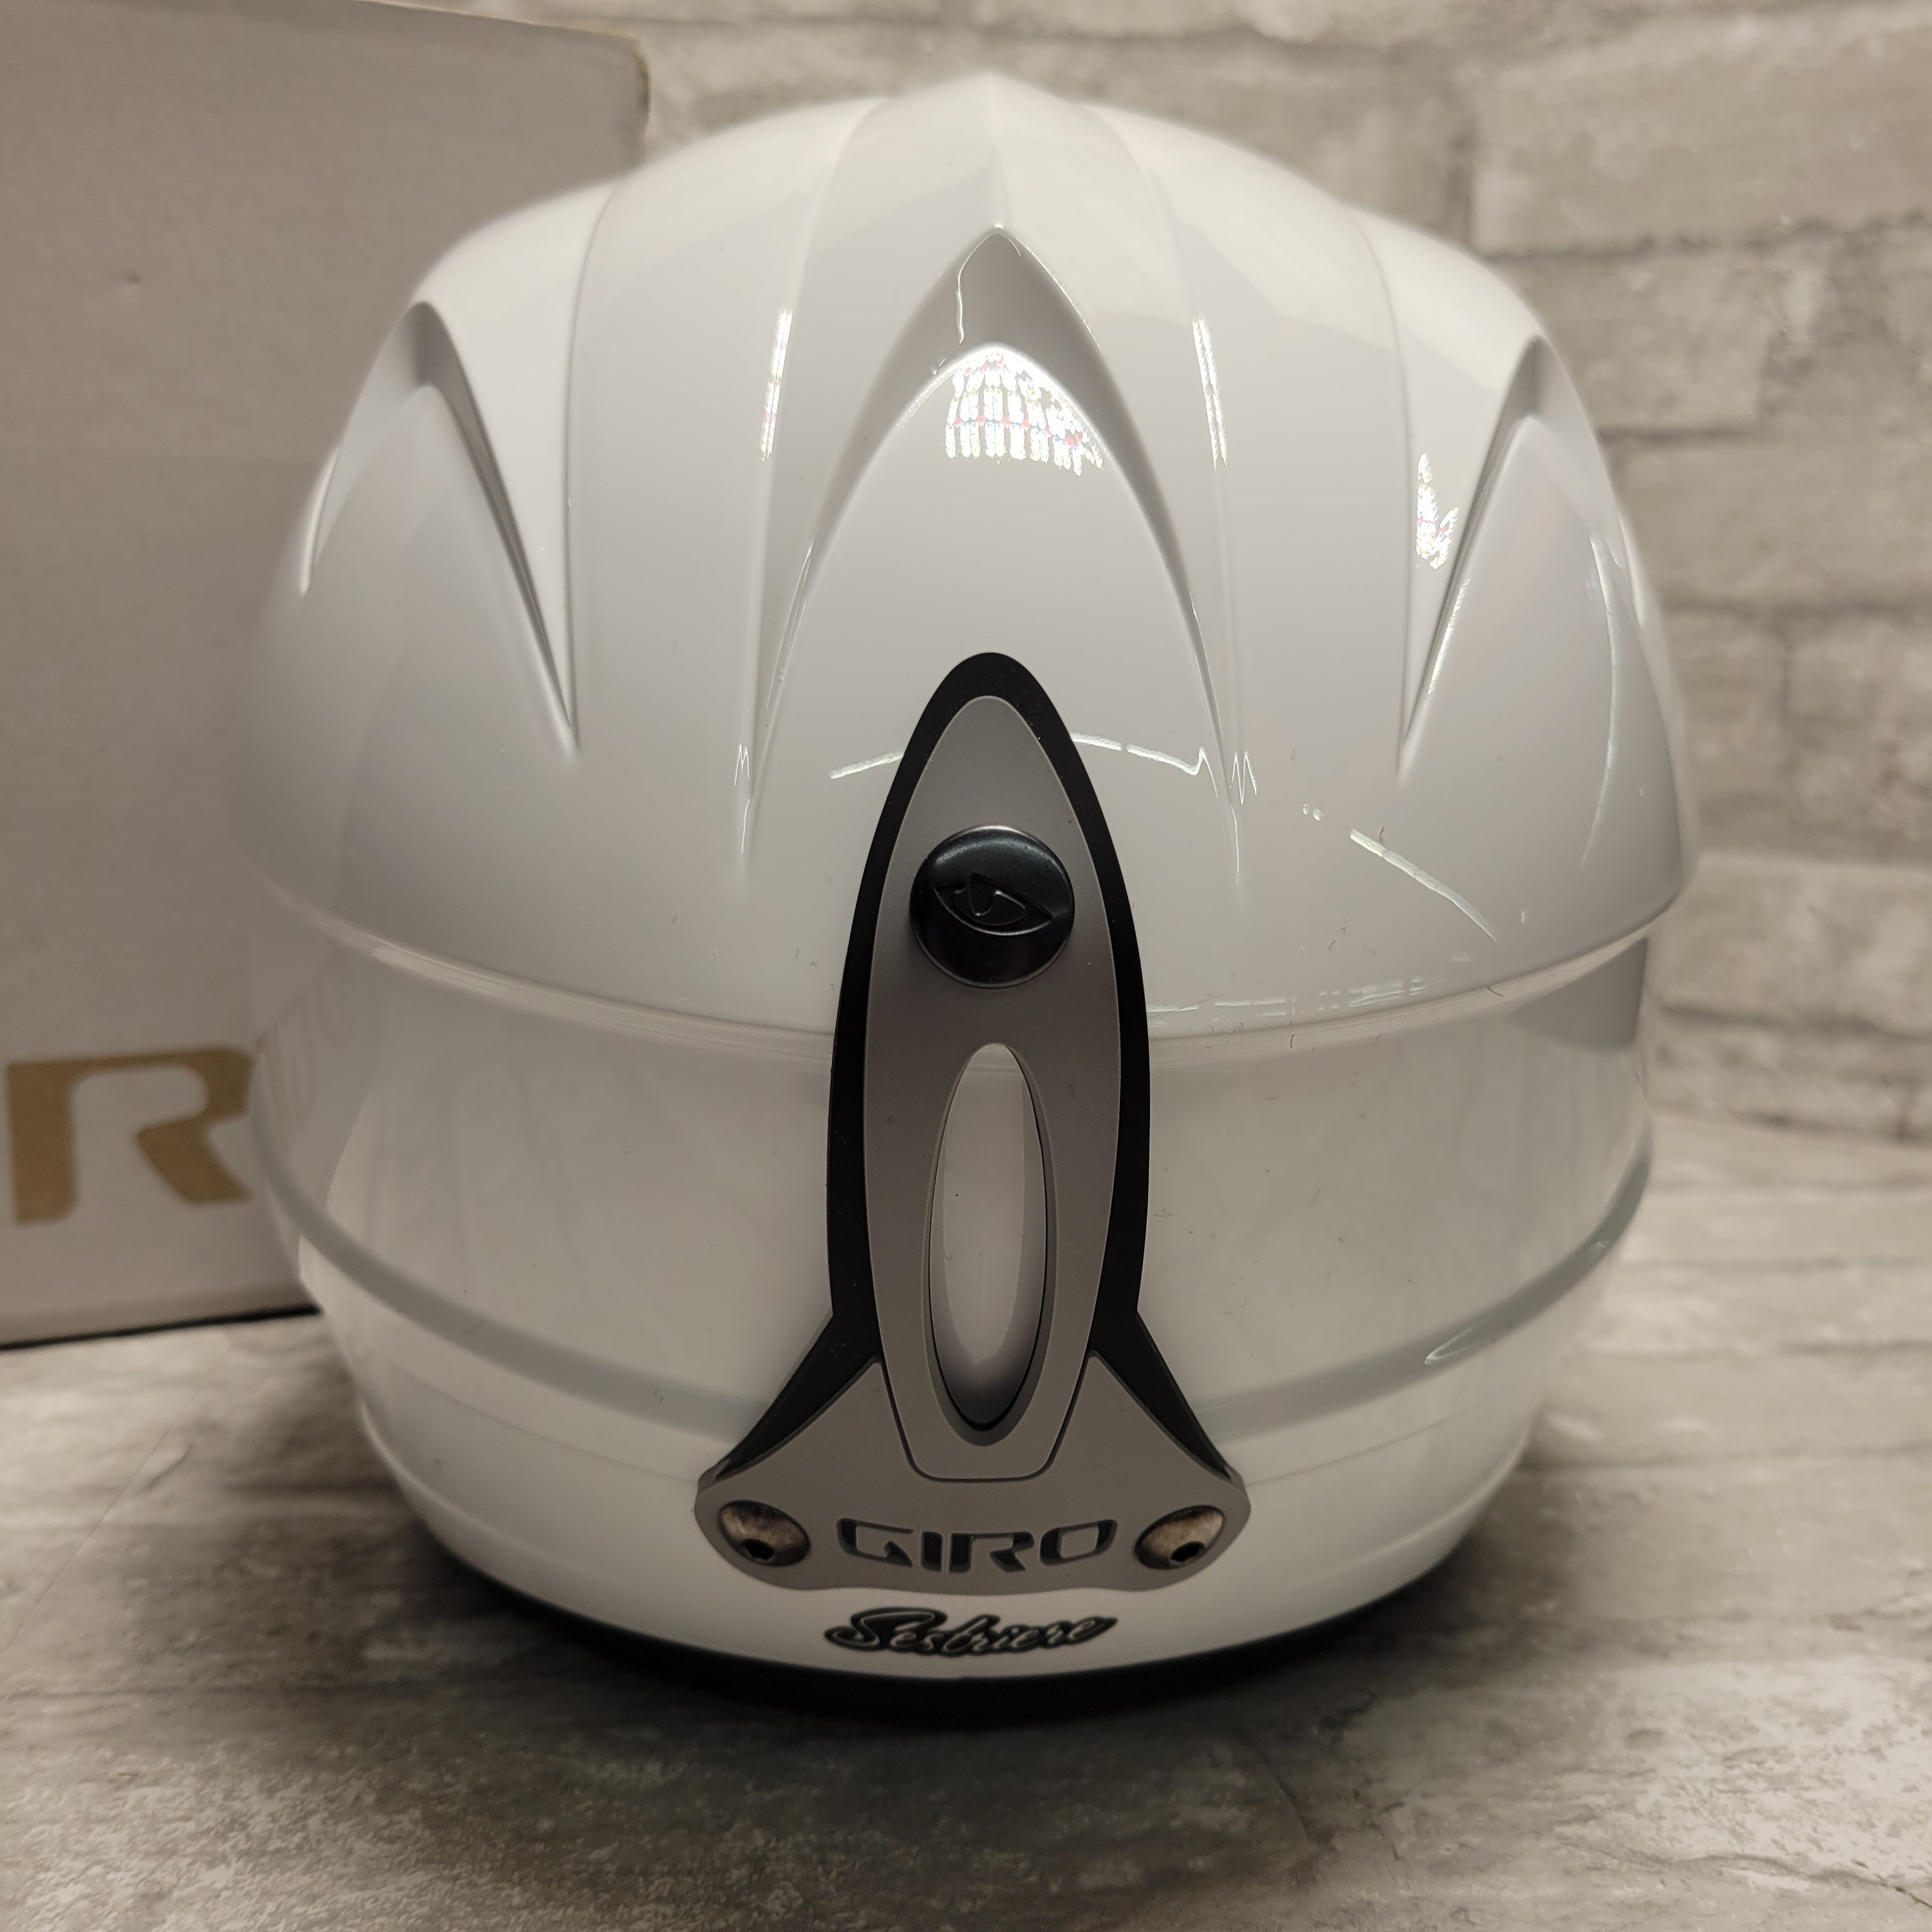 Giro Sestriere Race Snow Helmet #2033948, Adult White Medium (8075261837550)